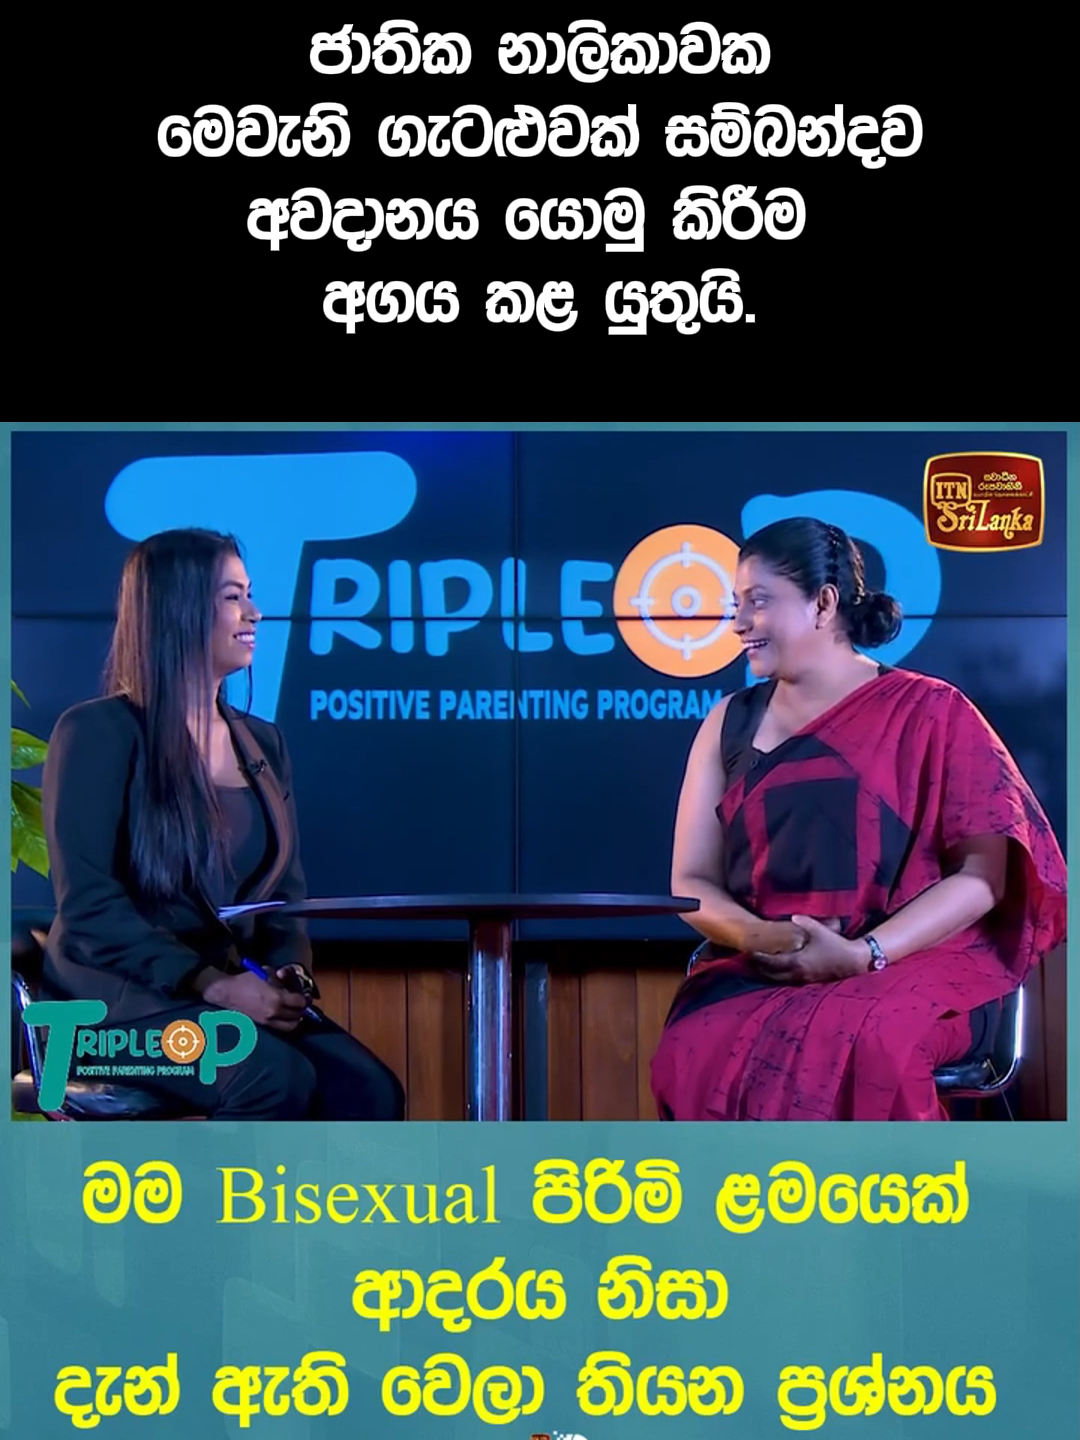 ජාතික නාලිකාවක මෙවැනි ගැටළුවක් පිළිබඳව අවධානය යොමු කිරීම අගය කල යුතුය. 'මම Bisexual පිරිමි ළමයෙක්... ආදරය නිසා දැන් ඇති වෙලා තියන ප්‍රශ්නය' Video copyrights: @itnsrilanka